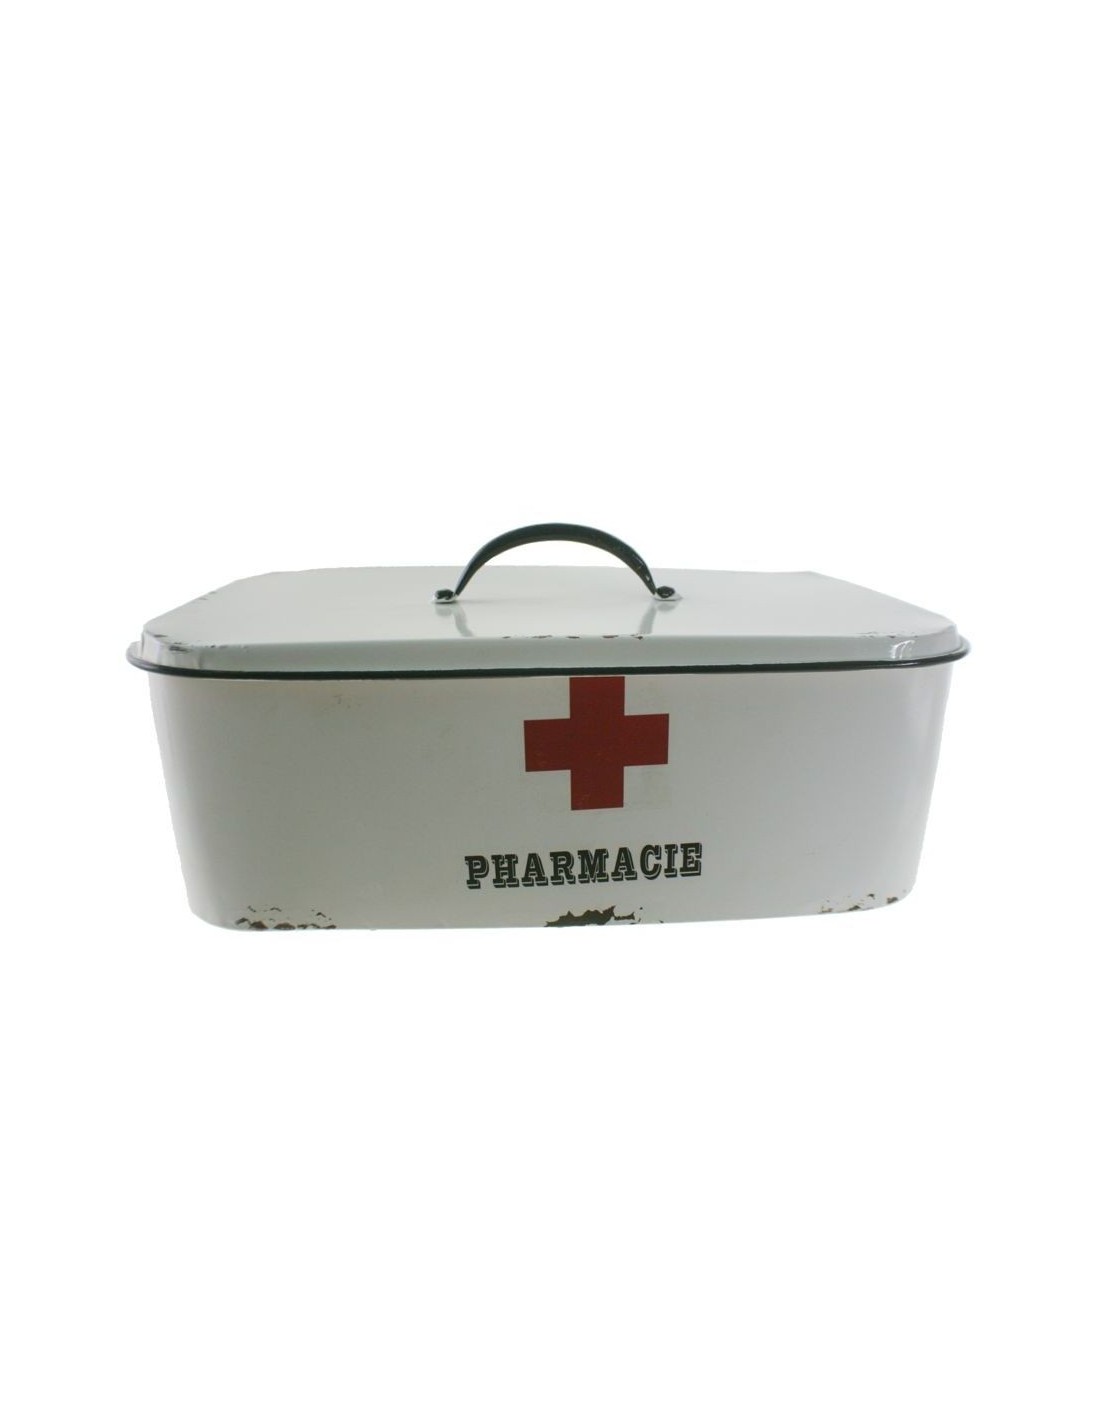 Caixa per emmagatzemar medicines de metall color blanc estil vintageolor blanc. Mesures: 37x20 cm.